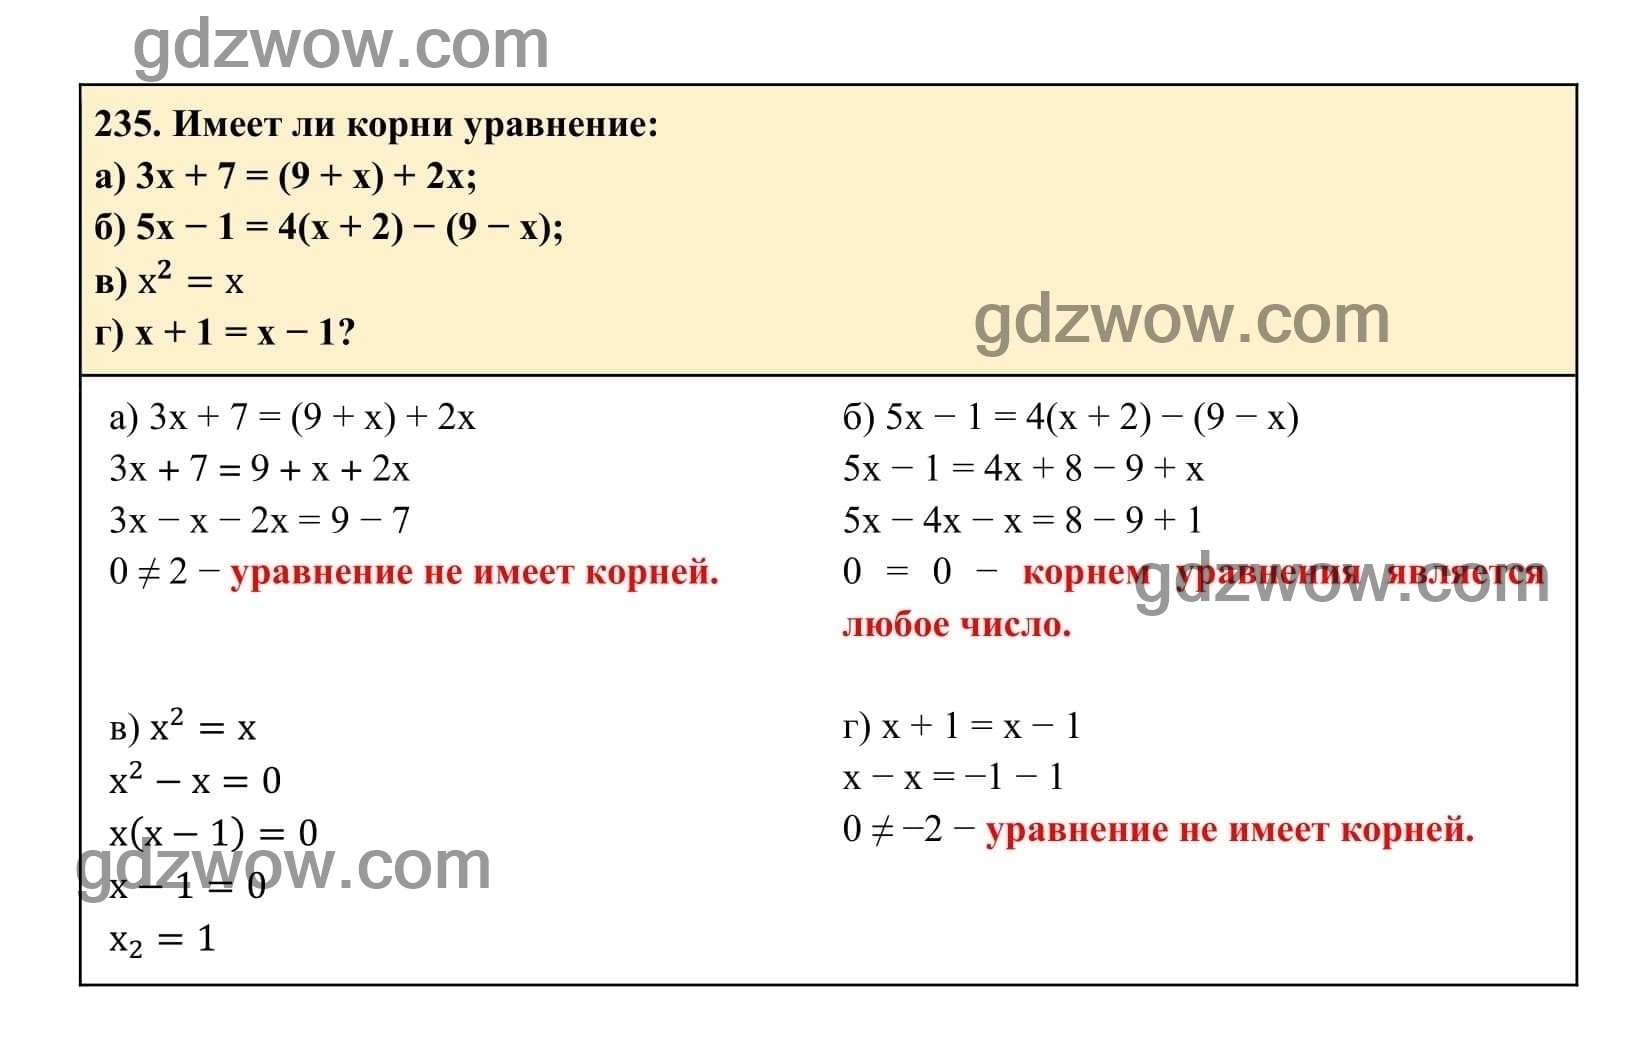 Упражнение 235 - ГДЗ по Алгебре 7 класс Учебник Макарычев (решебник) - GDZwow